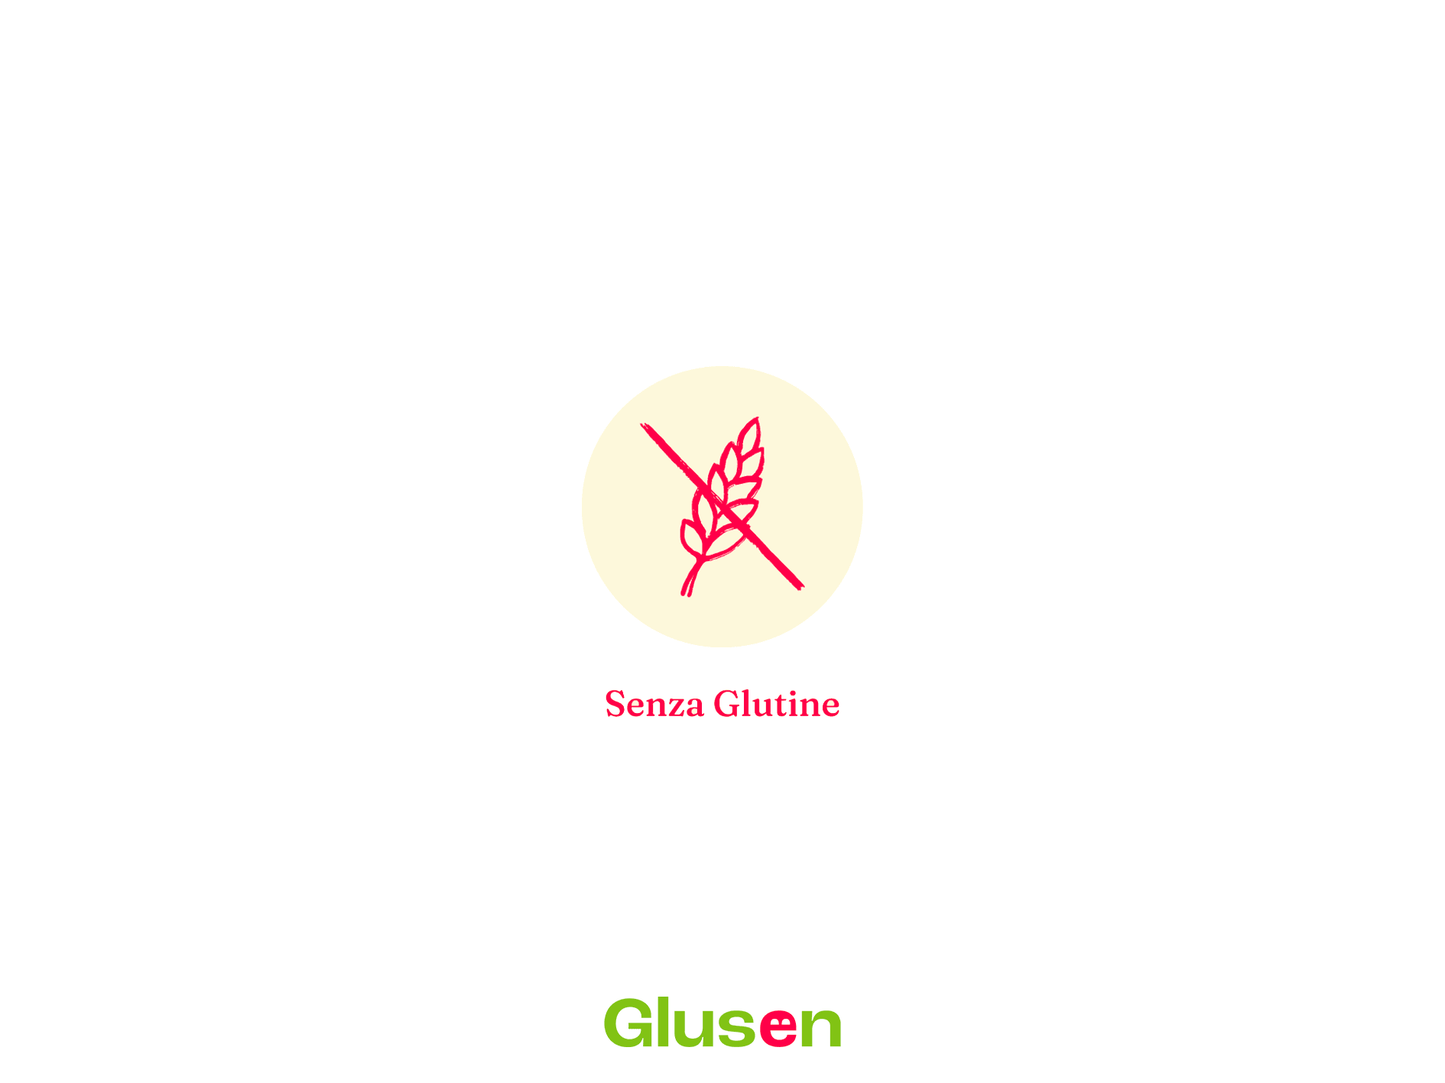 Linguine n 13 Senza Glutine - Glusen